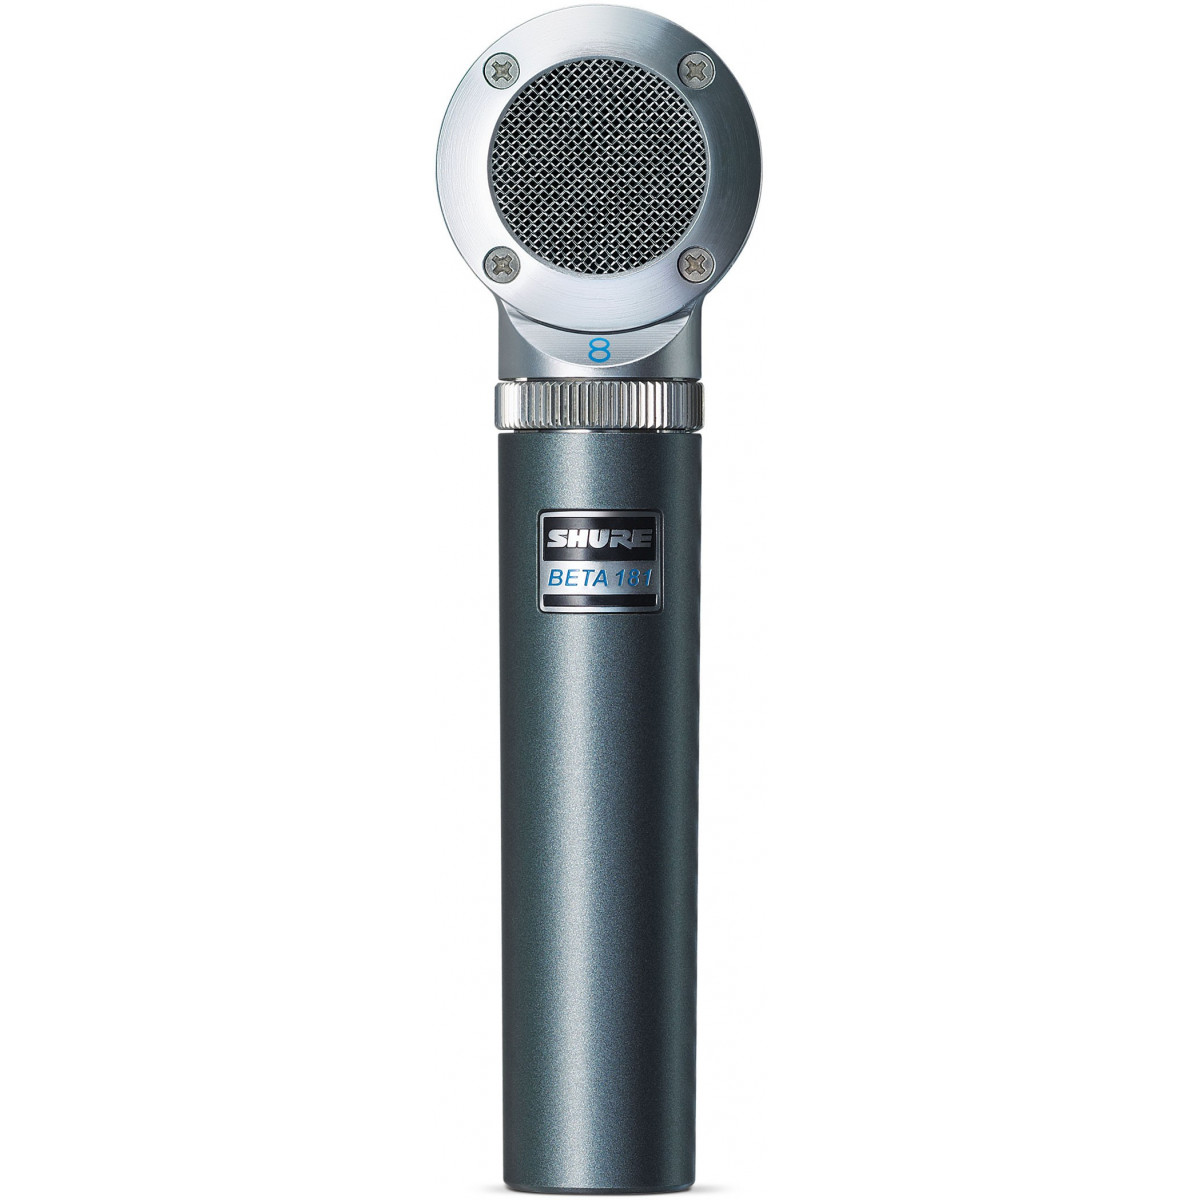 Micrófono de condensador con cápsula bidireccional